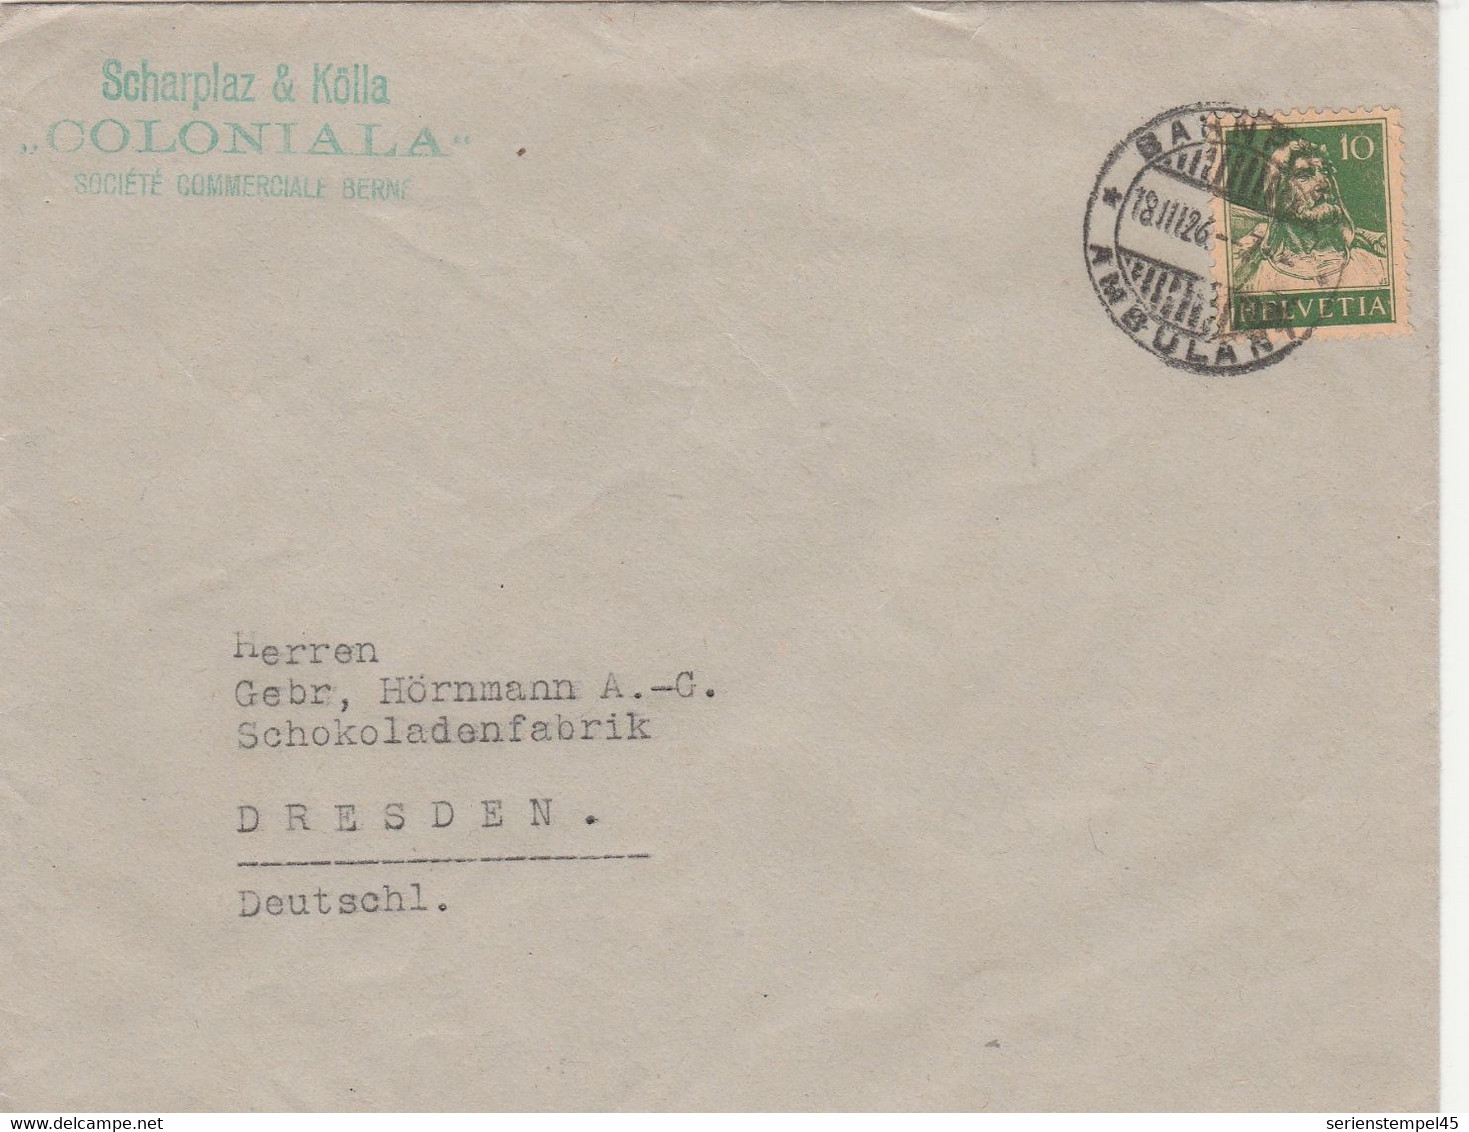 Schweiz Brief Mit BAHNPOST - AMBULANT 1926 Zug 7 Von Bern Nach Dresden - Railway